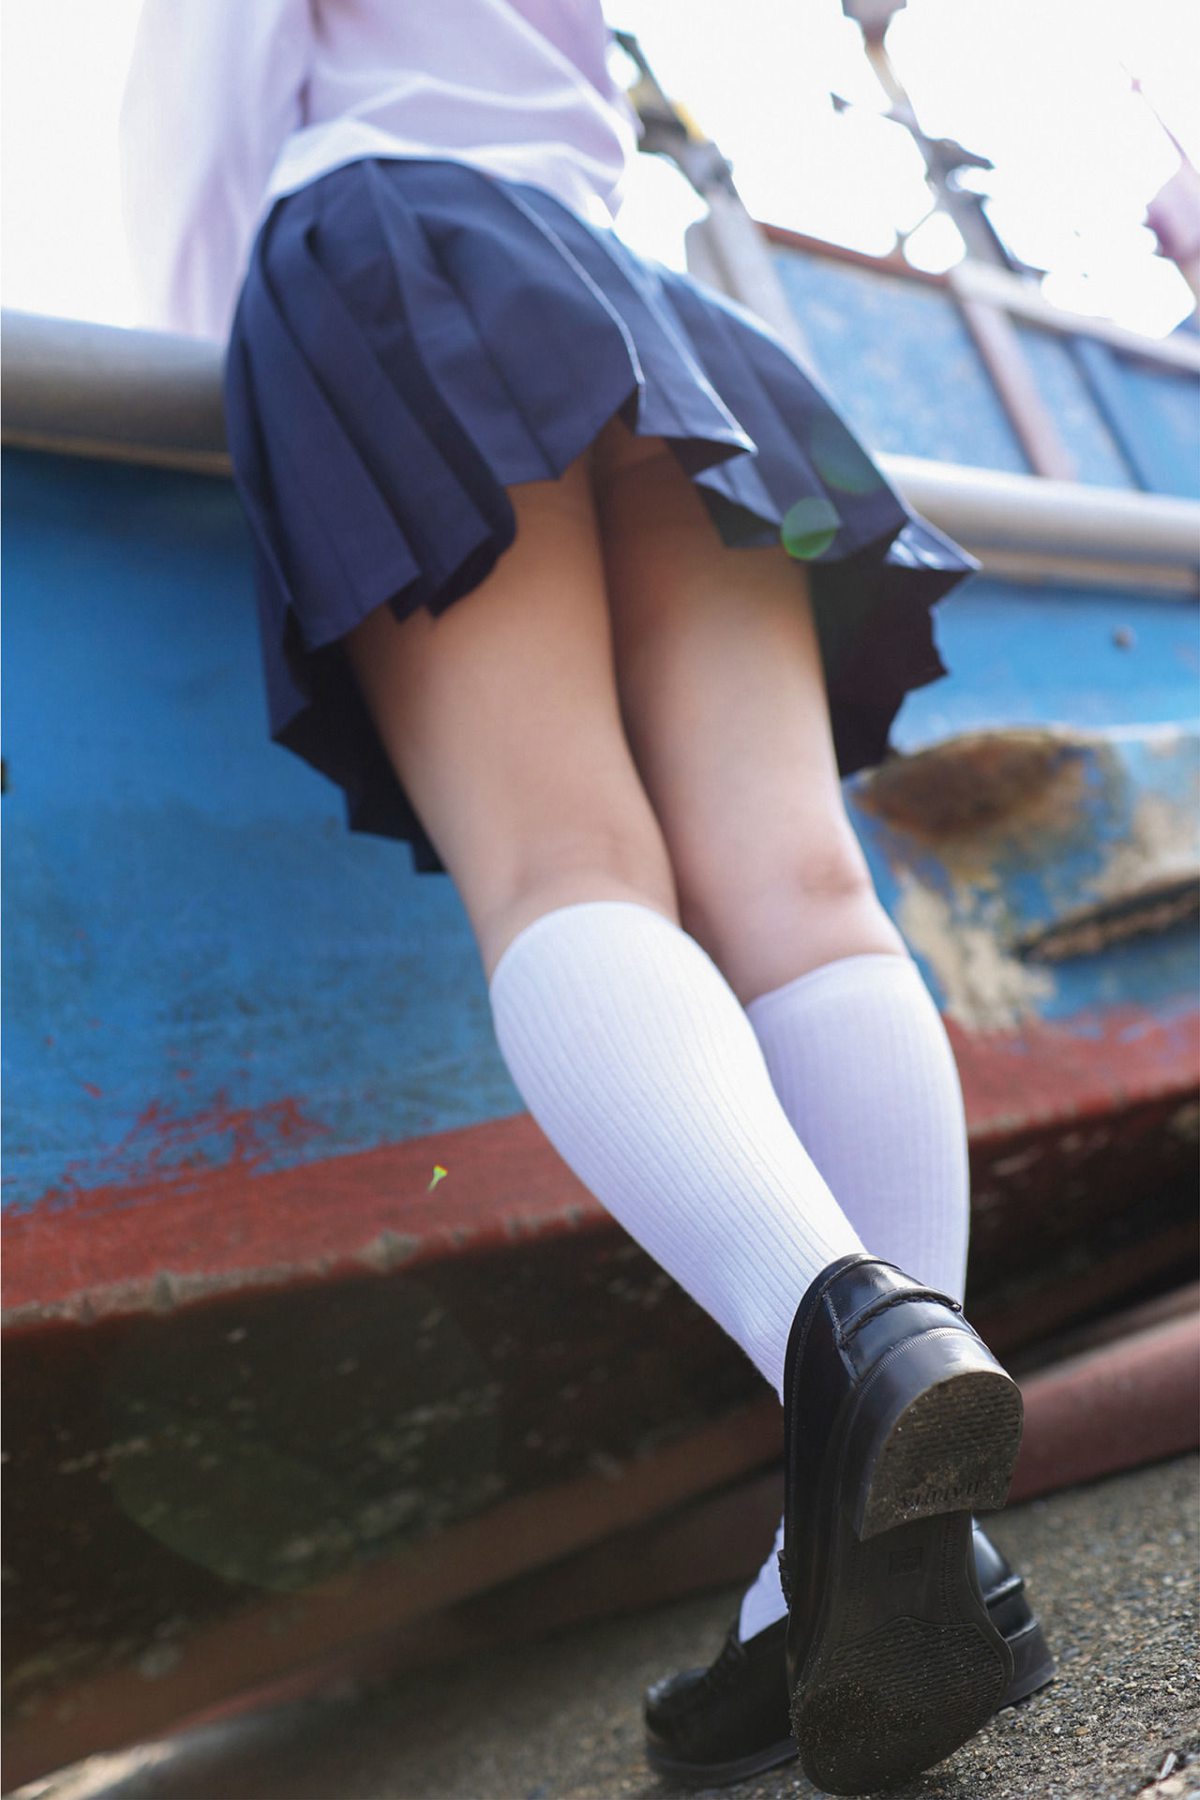 Photobook Mizuki Amane 天然美月 Little girl 幼な少女 2021 12 17 0012 0475517243.jpg